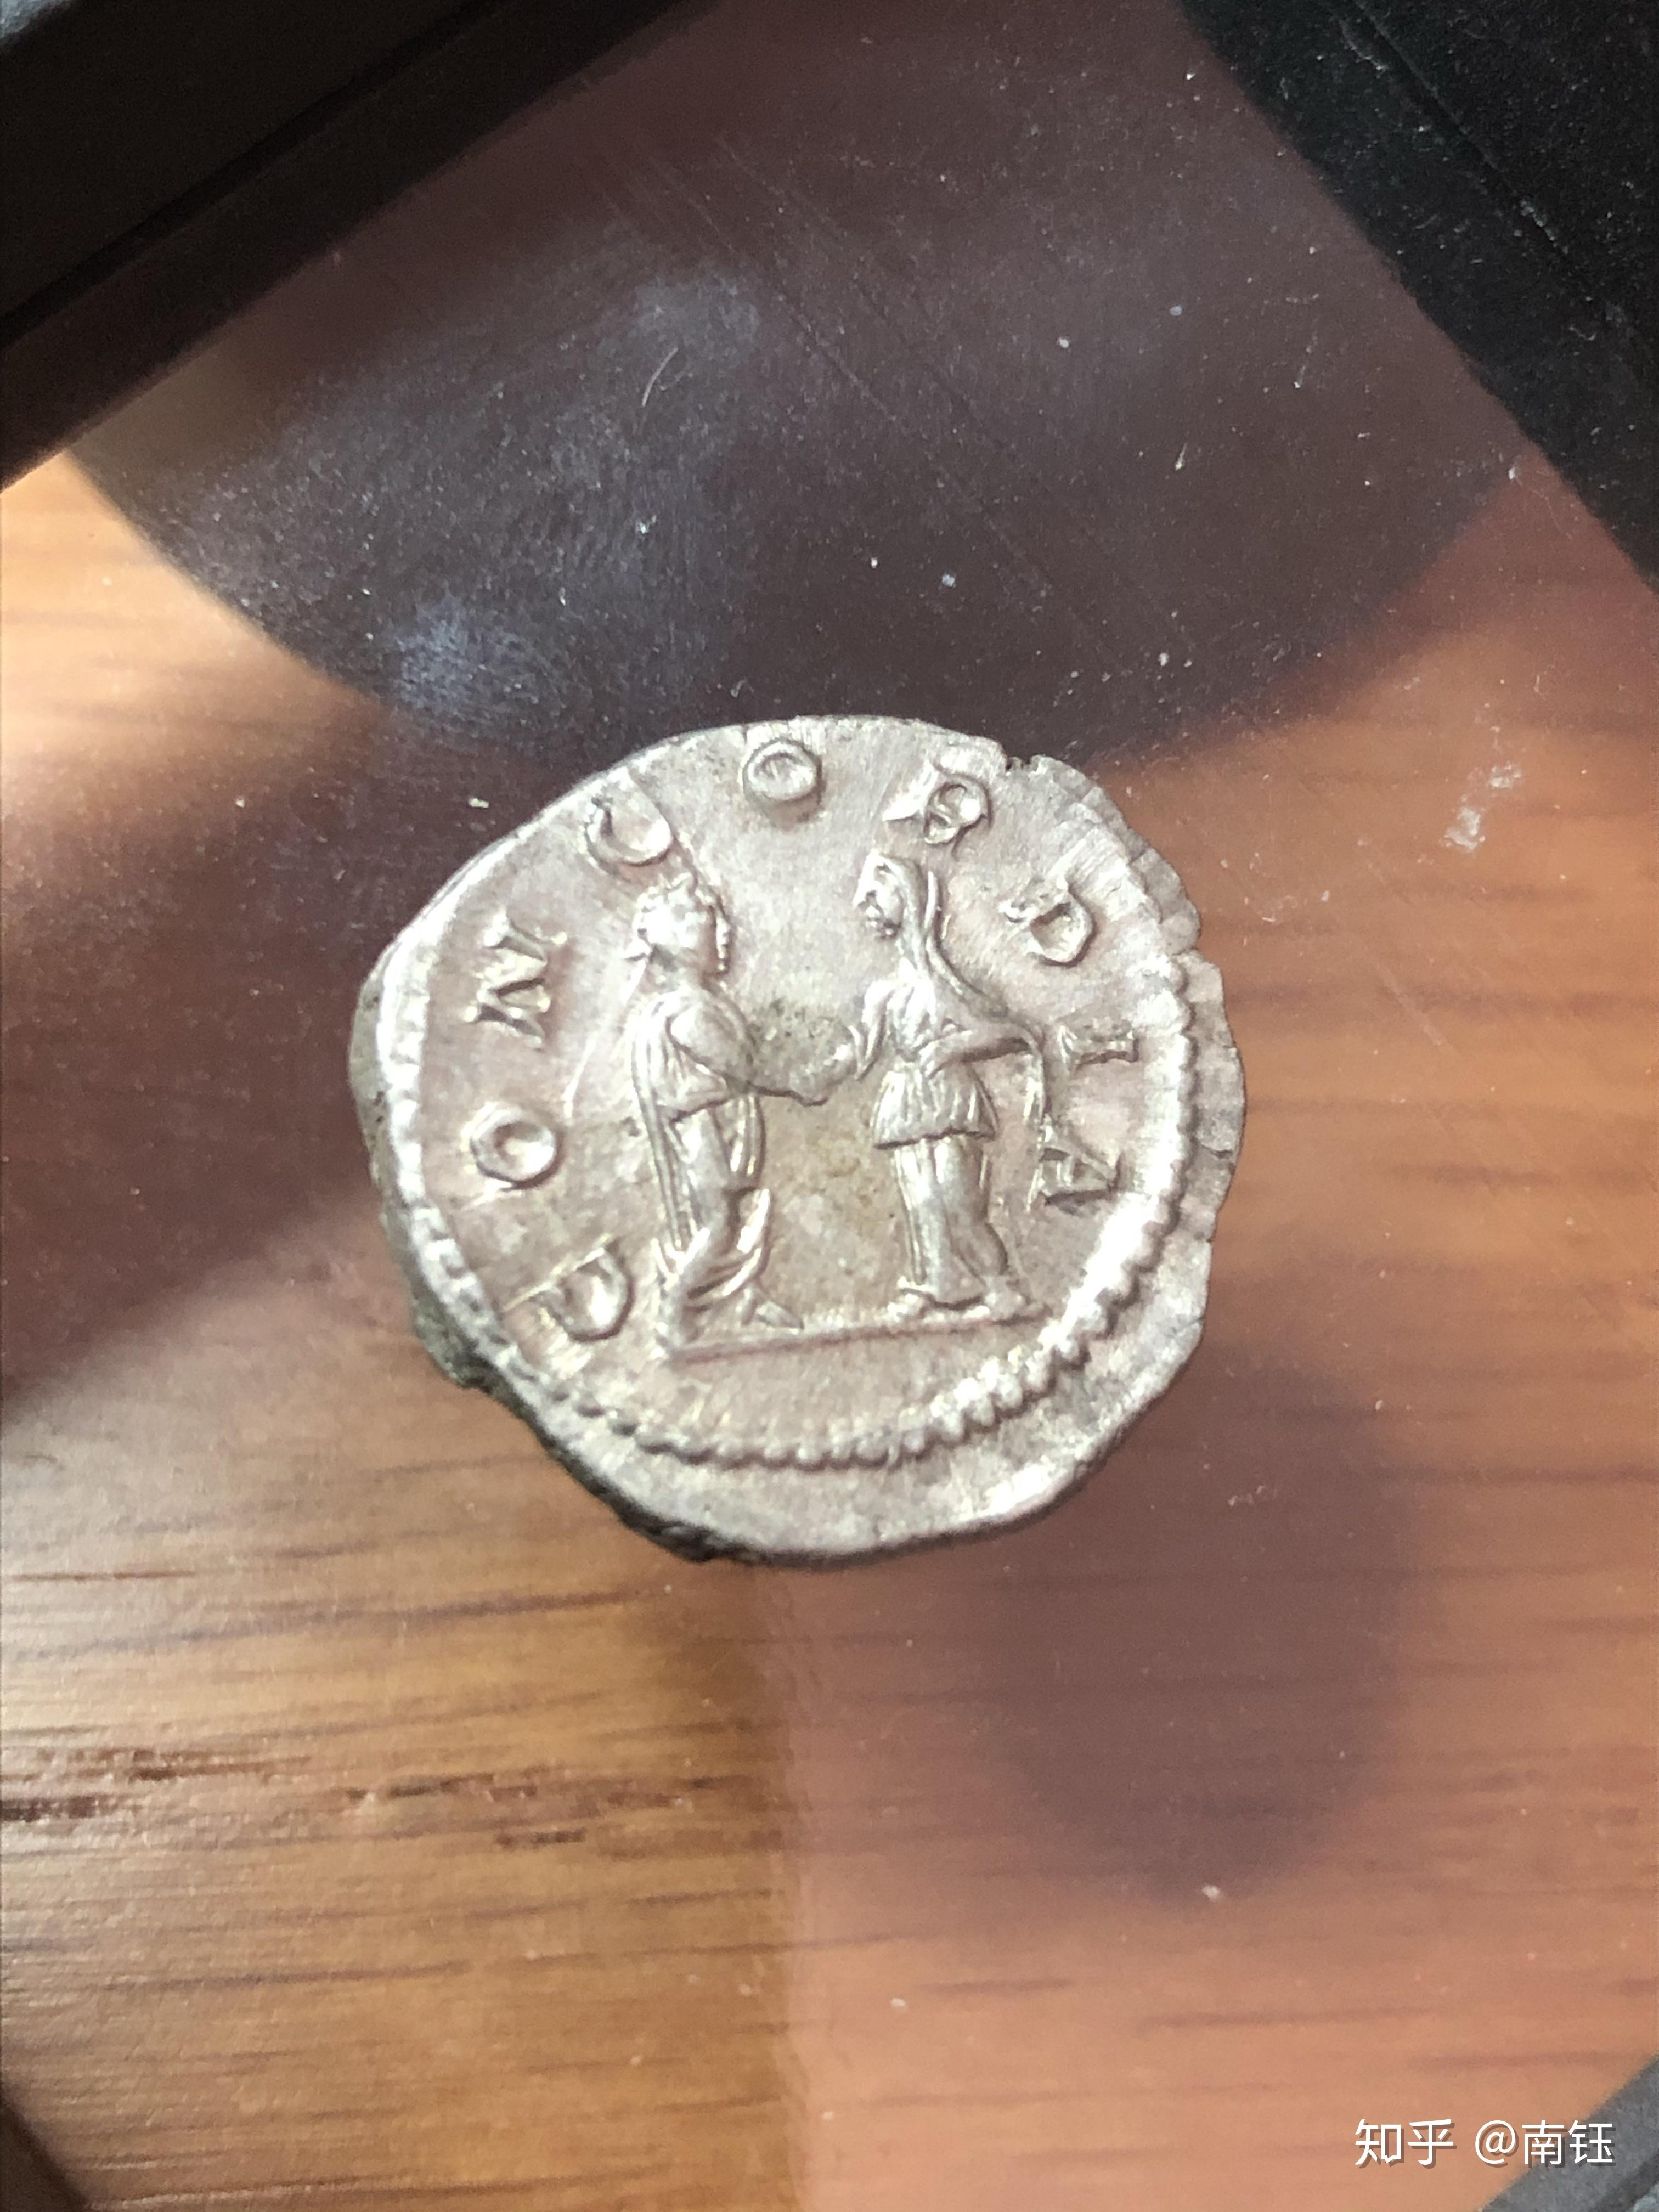 一窥古罗马钱币上的女性——朱莉亚宝拉(julia paula)第纳尔银币